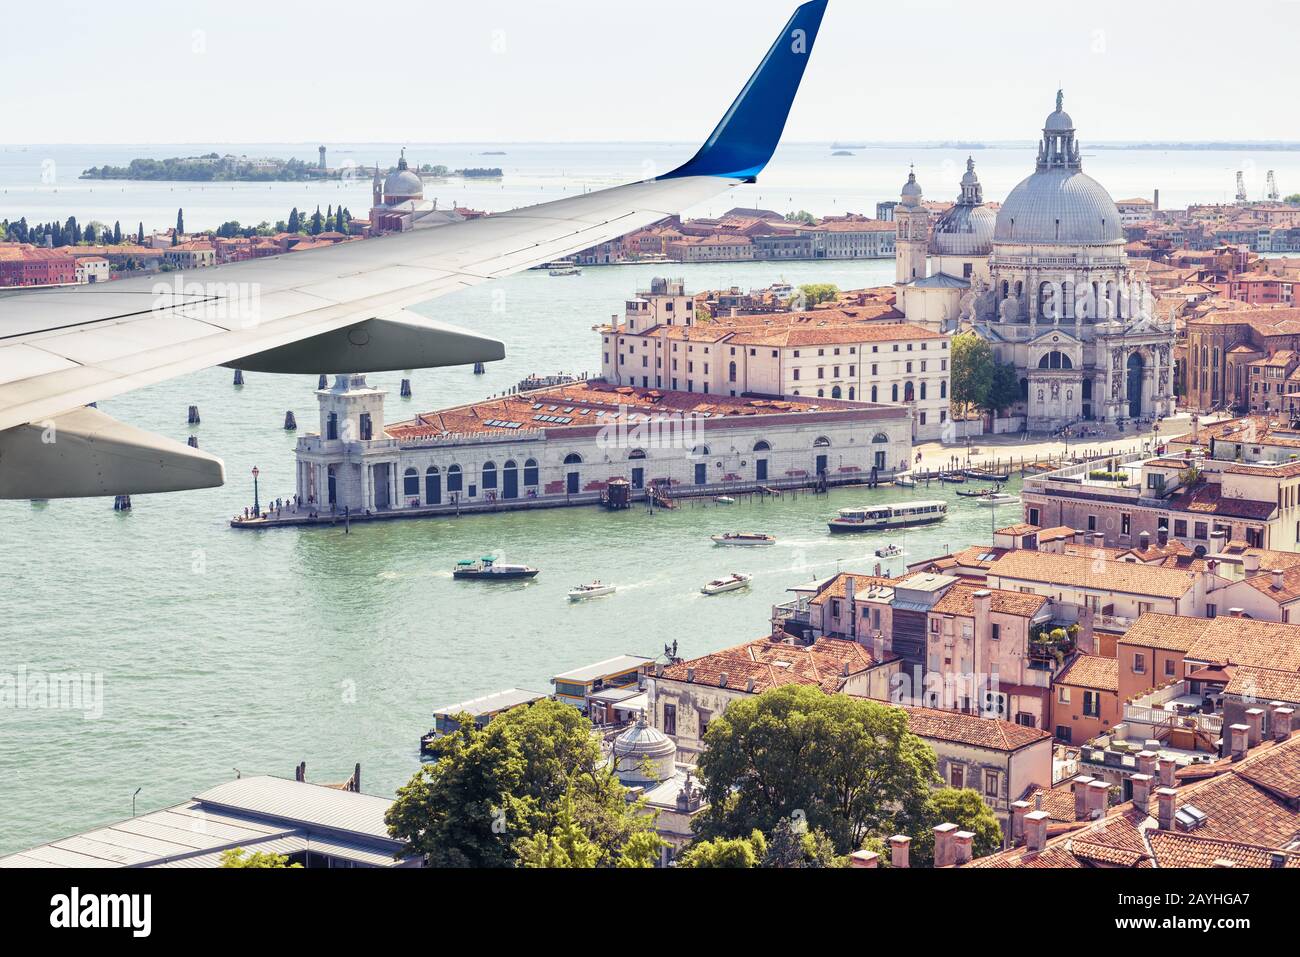 L'aereo vola sopra Venezia, Italia. Vista panoramica aerea della città e del mare dalla finestra dell'aereo. L'ala dell'aereo sopra Venezia durante il decollo o l'atterraggio Foto Stock